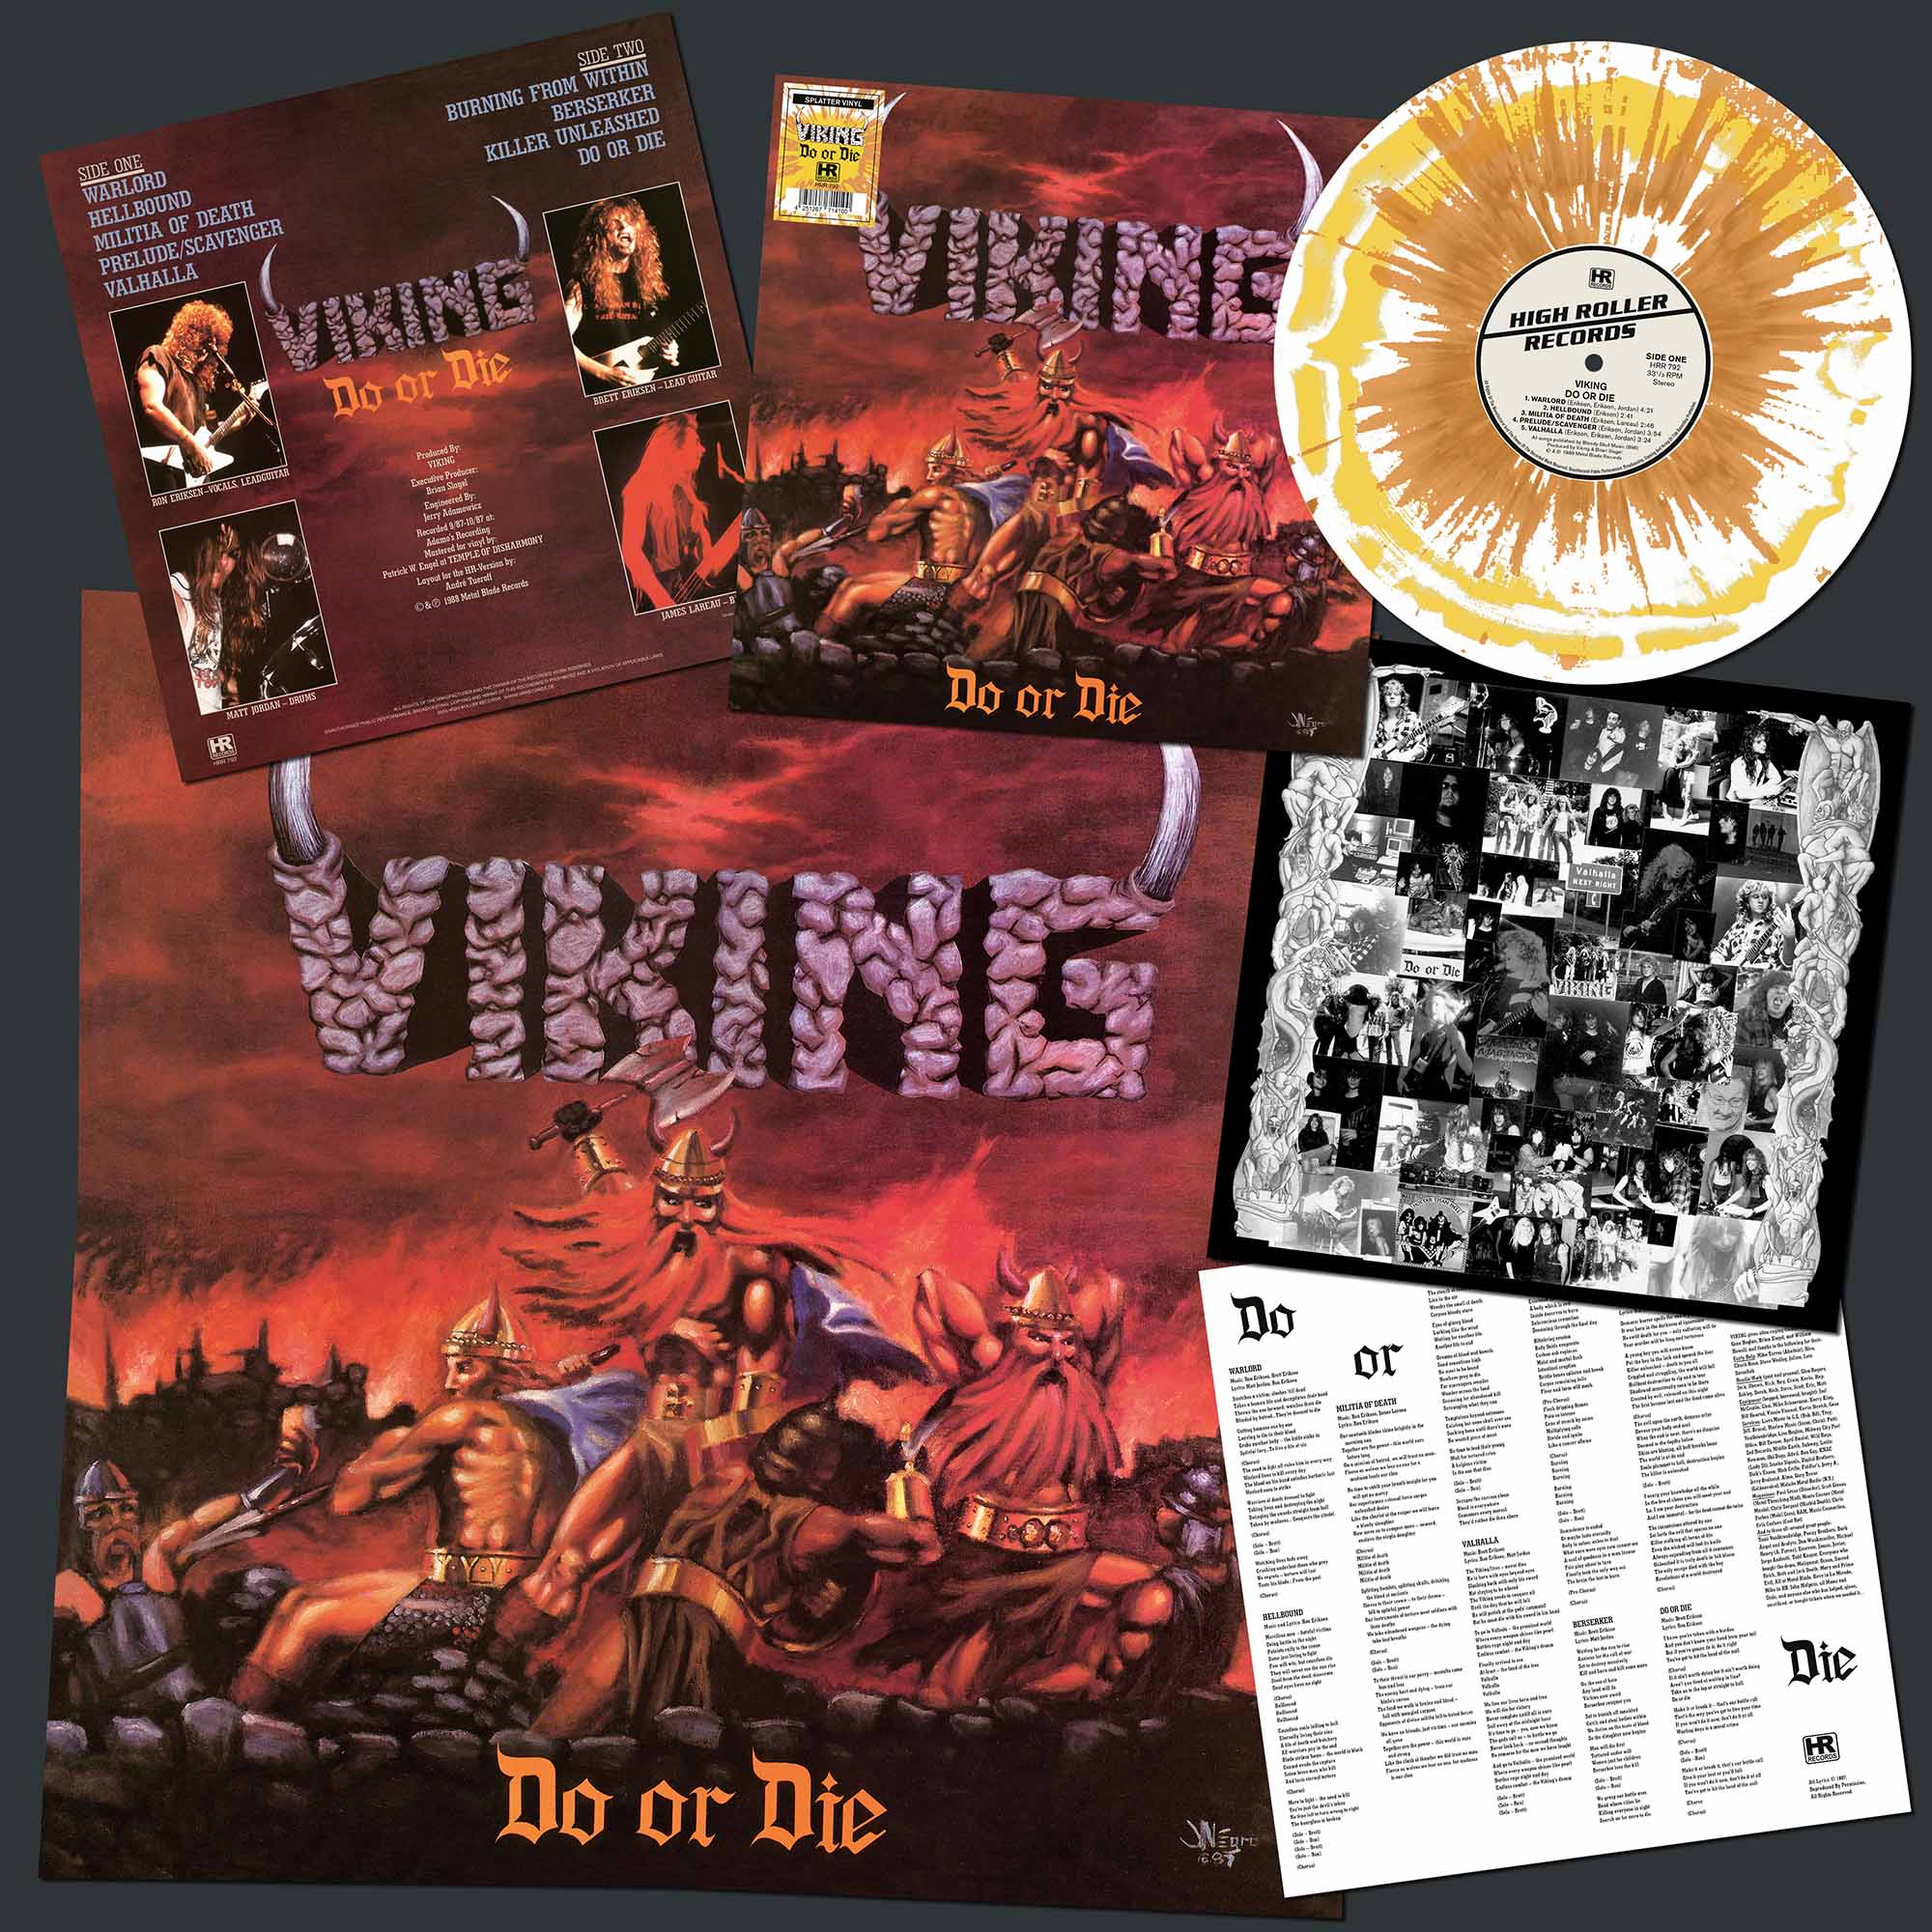 VIKING - Do or Die  LP